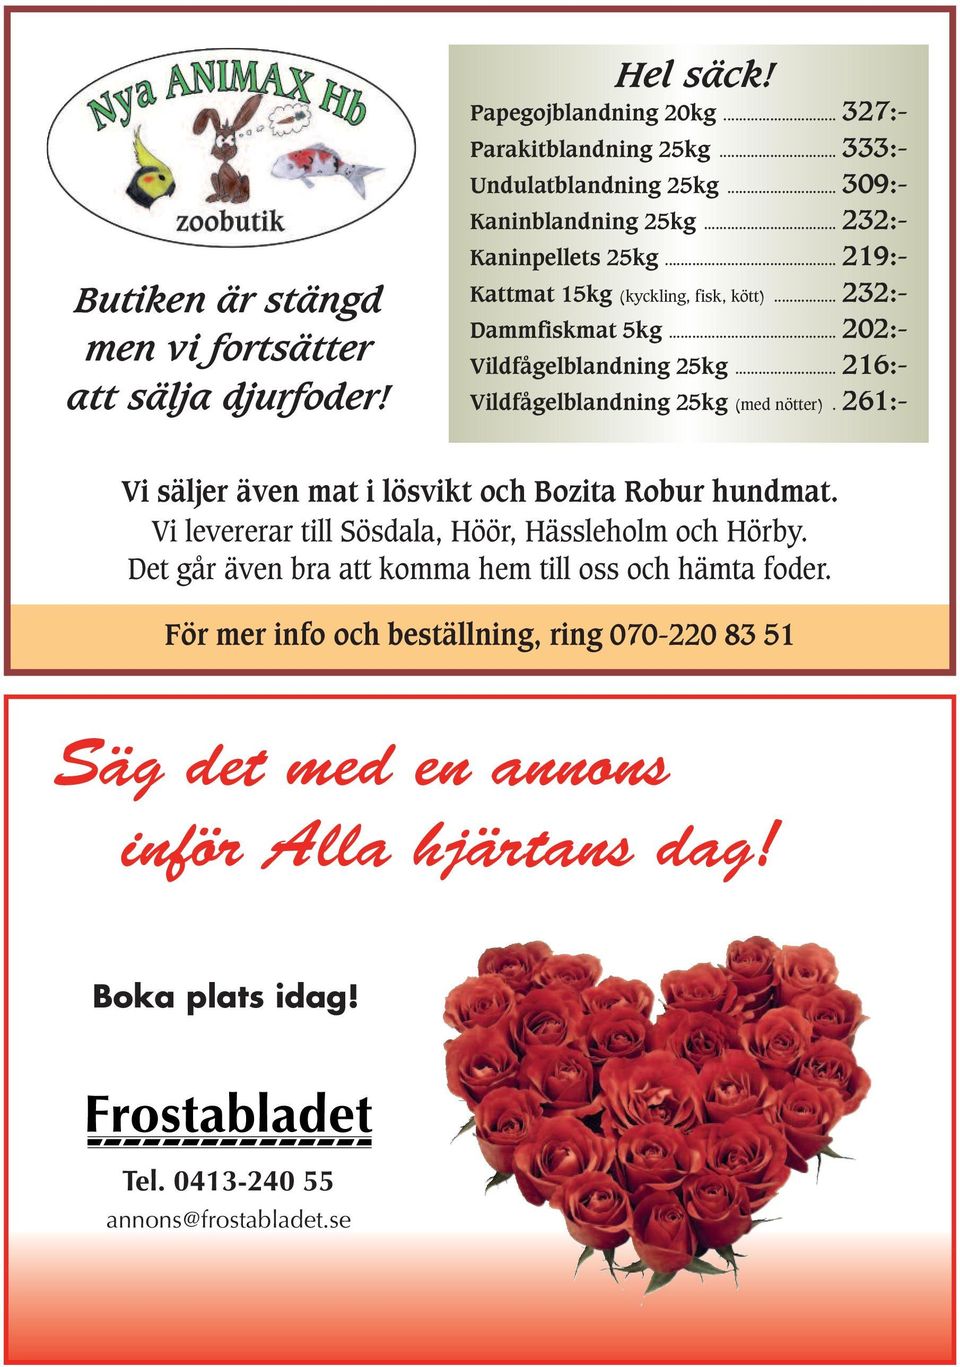 .. 216:- Vildfågelblandning 25kg (med nötter). 261:- Vi säljer även mat i lösvikt och Bozita Robur hundmat. Vi levererar till Sösdala, Höör, Hässleholm och Hörby.